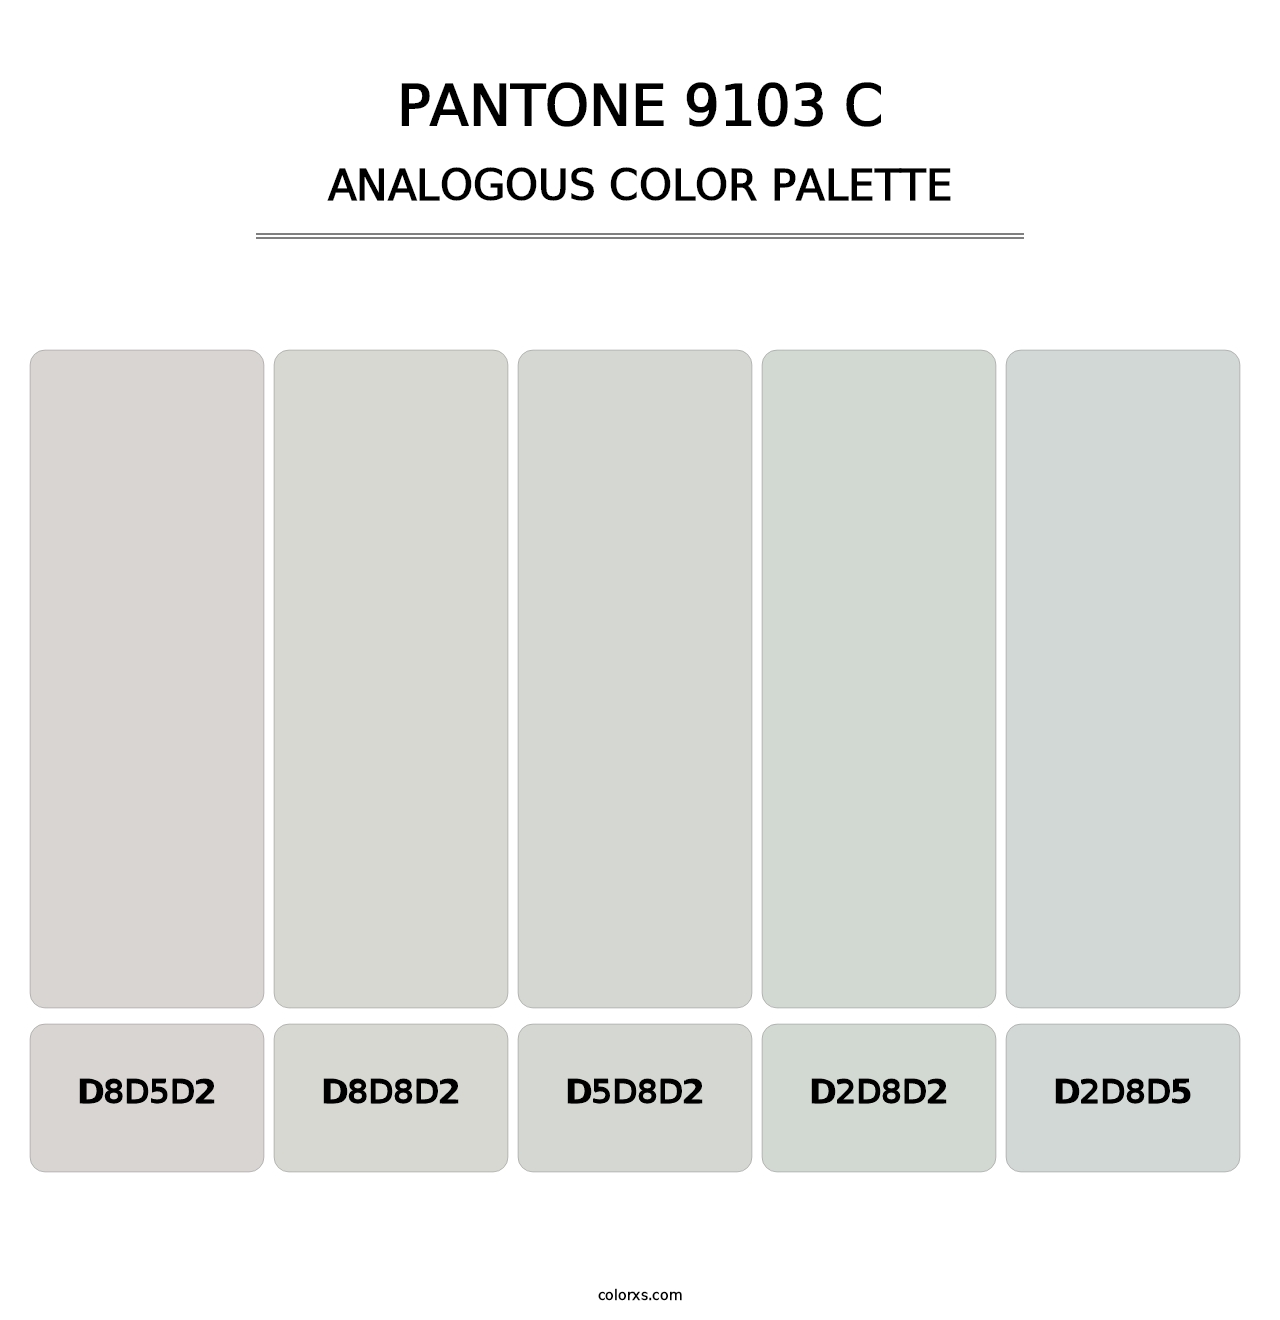 PANTONE 9103 C - Analogous Color Palette